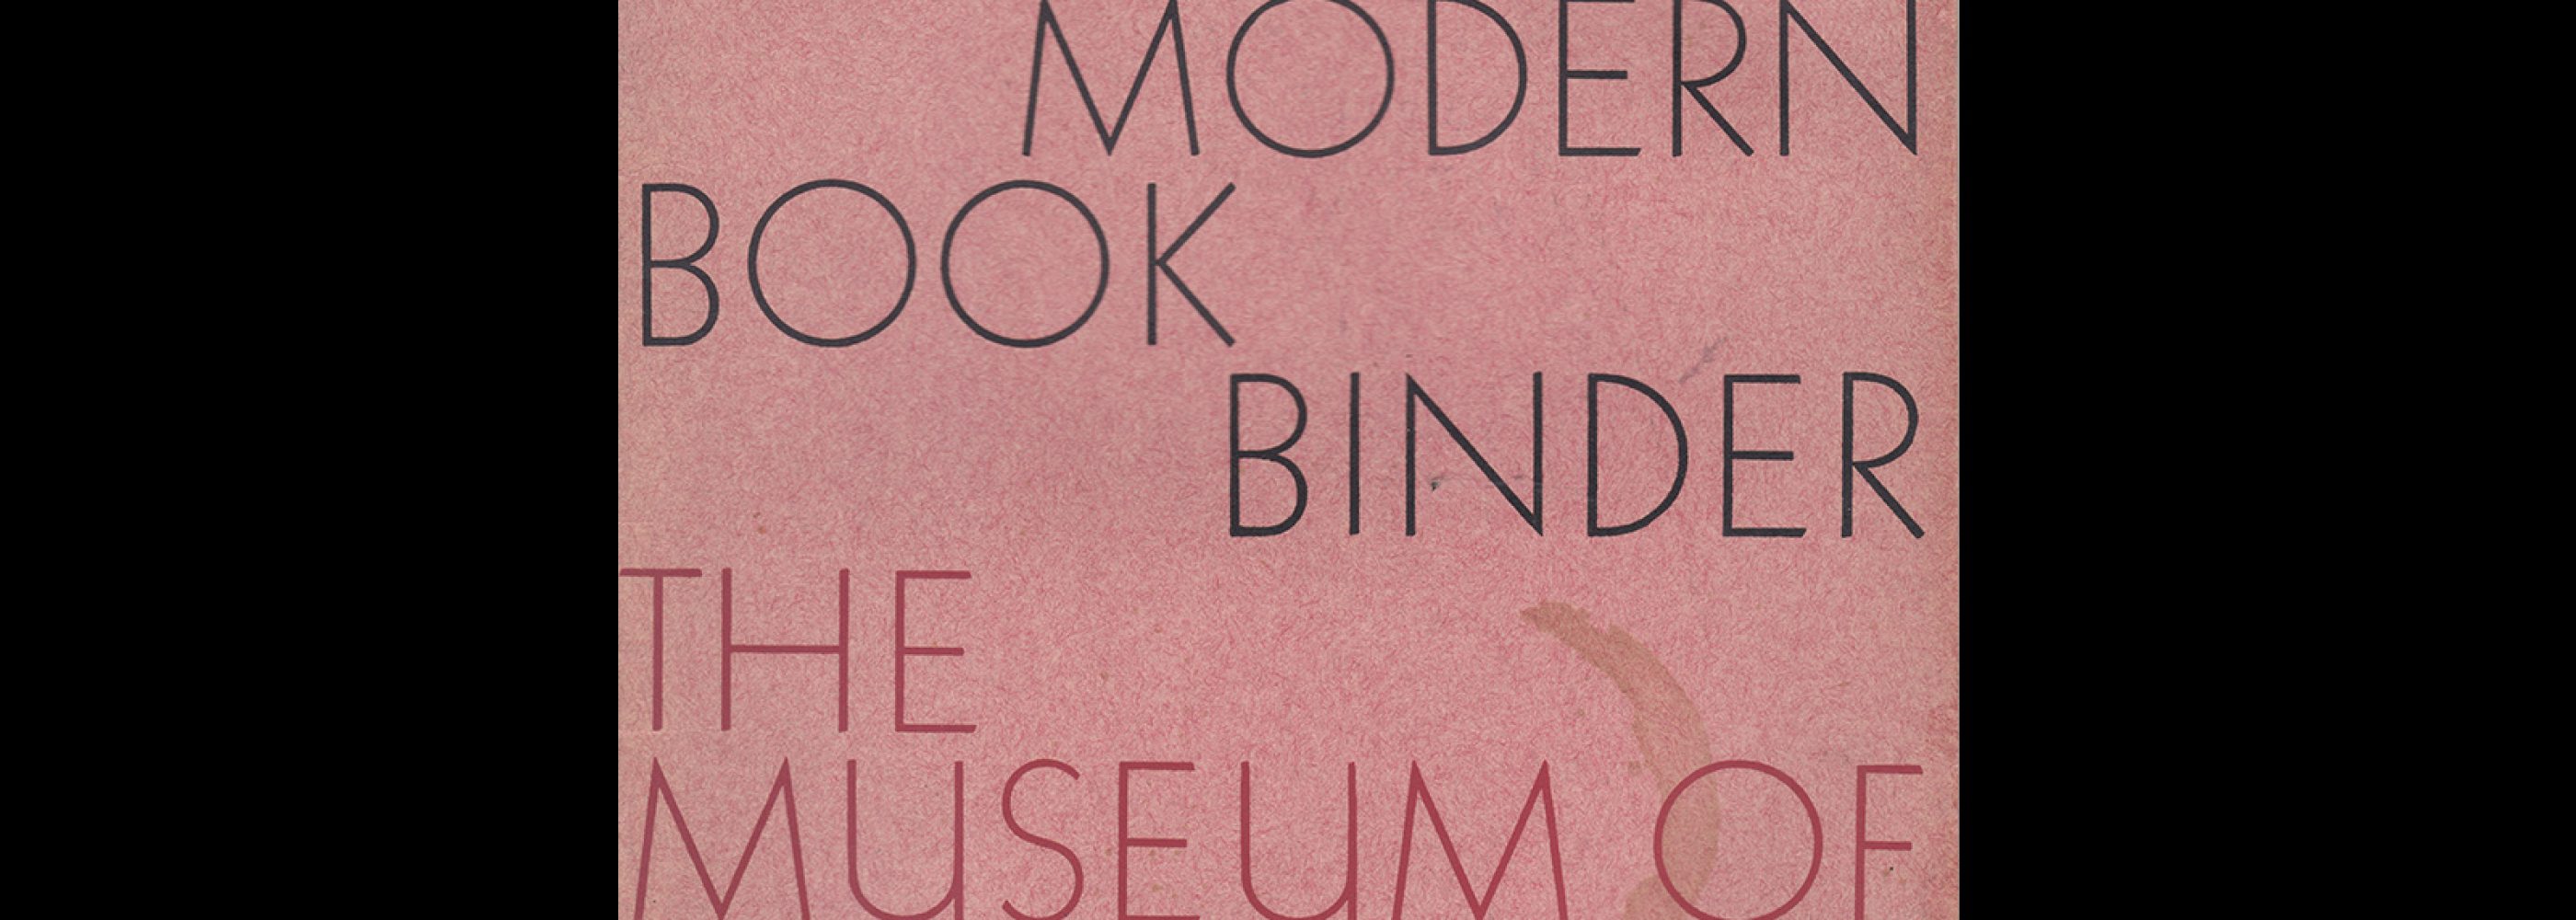 Ignatz Wiemeler Book Binder, Museum of Modern Art, 1935